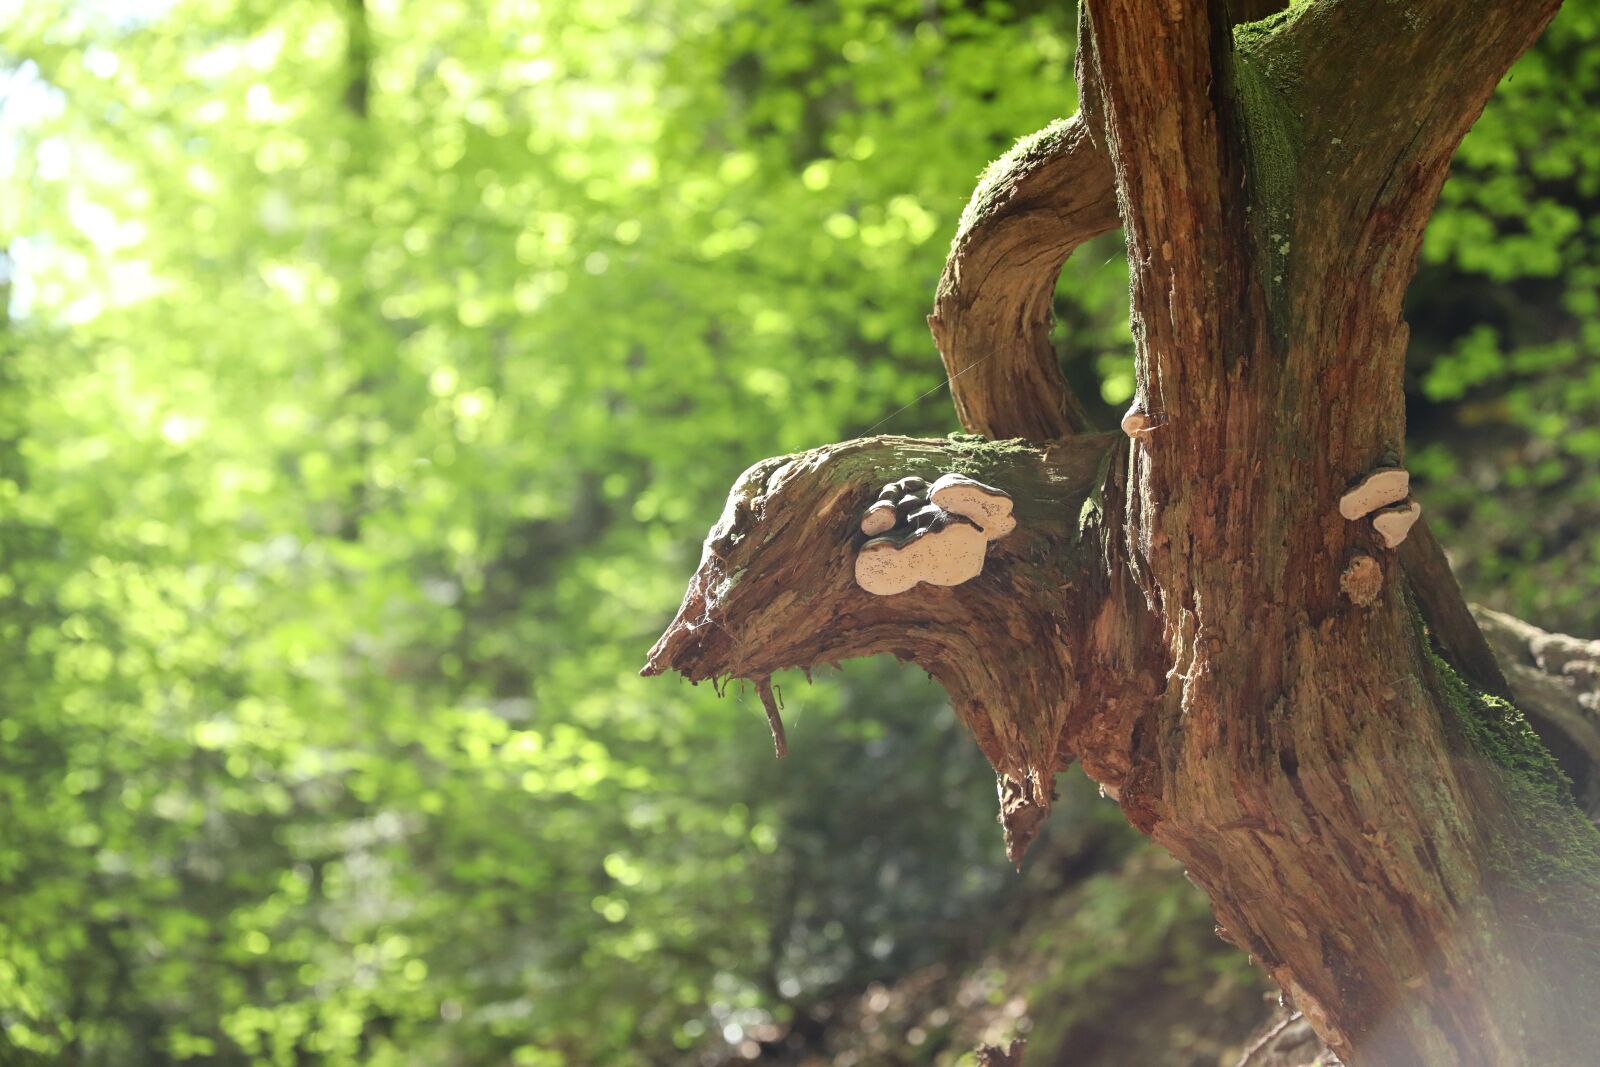 Canon EOS 5D Mark IV sample photo. Nature, tree, mushroom photography